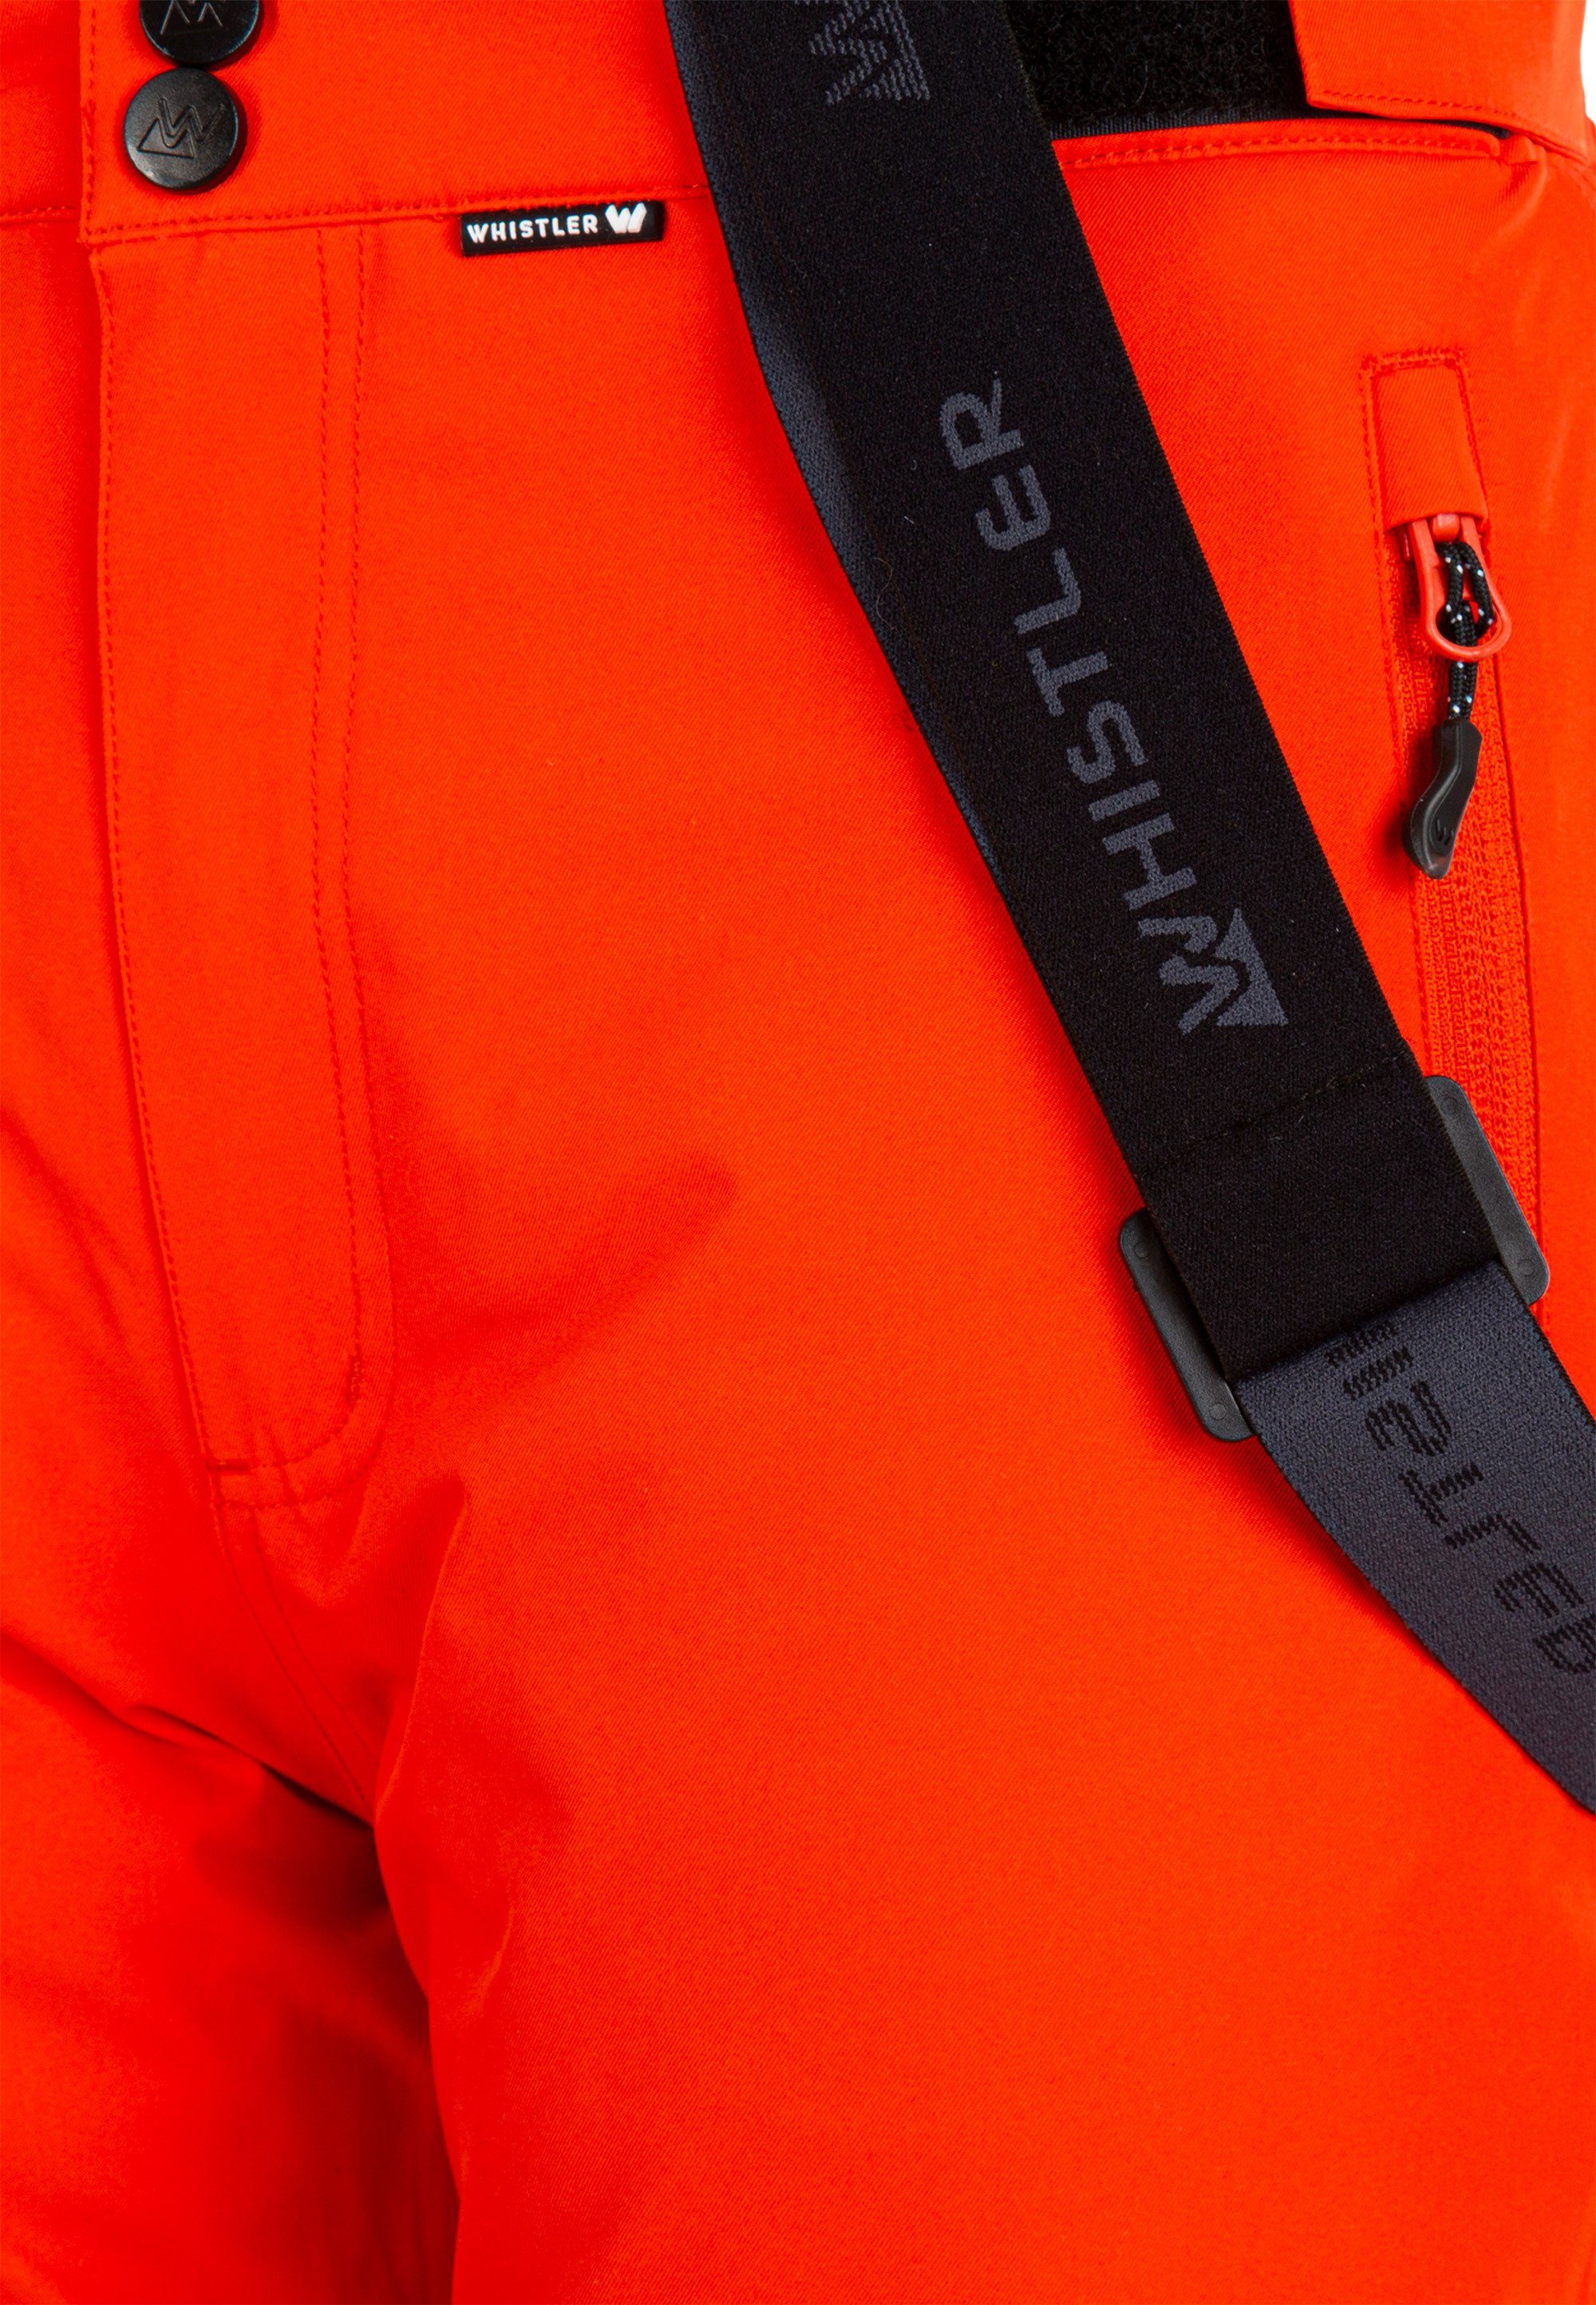 Skihose WHISTLER mit und Funktionsmembran rot-orange wind- wasserdichter Fairfax